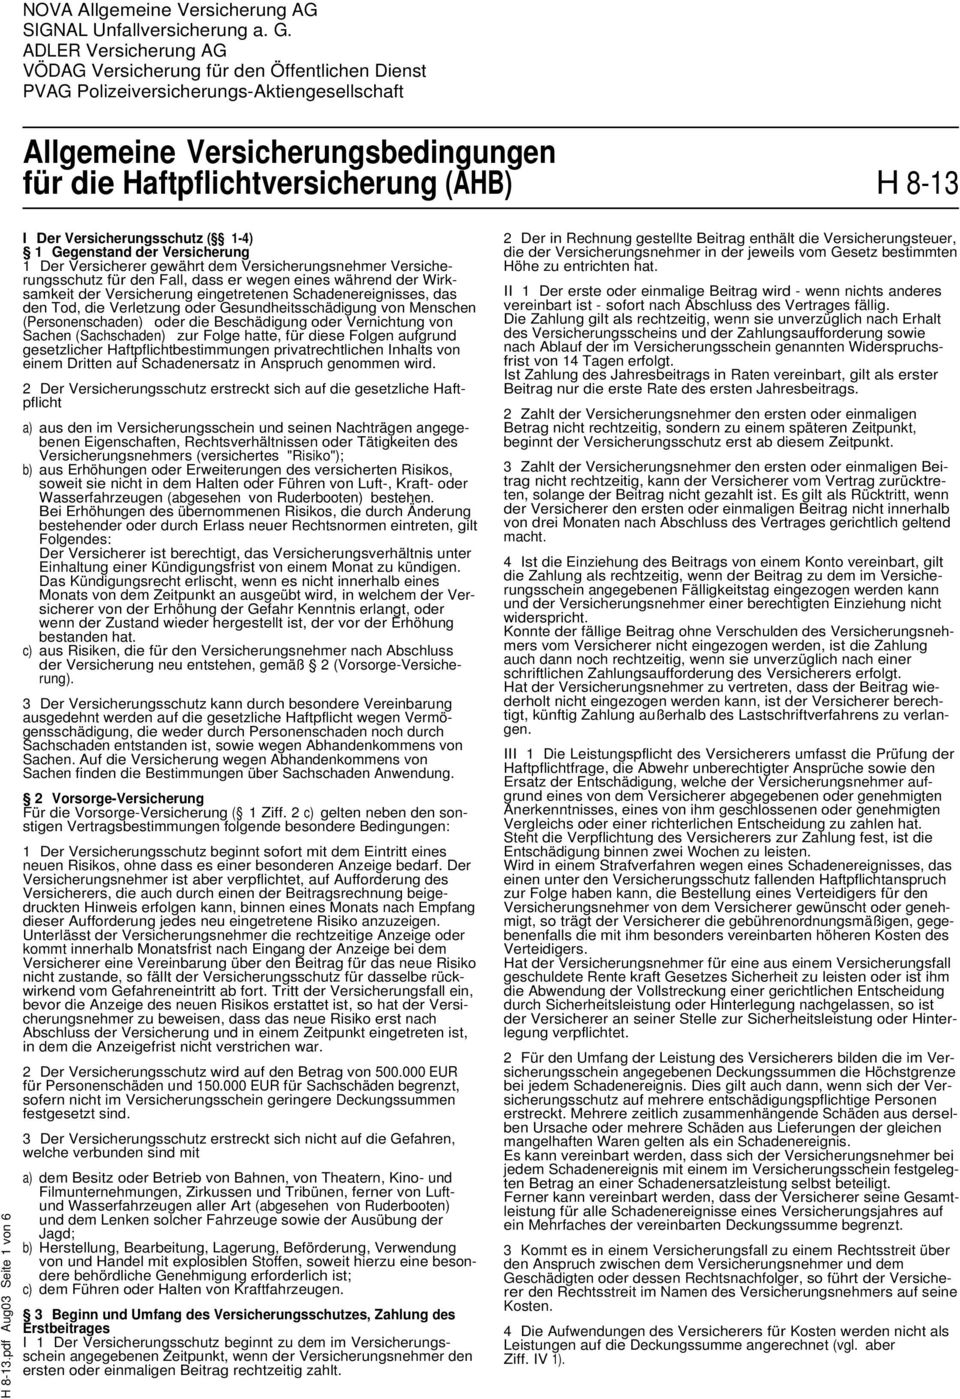 8-13.pdf Aug03 Seite 1 von 6 I Der Versicherungsschutz ( 1-4) 1 Gegenstand der Versicherung 1 Der Versicherer gewährt dem Versicherungsnehmer Versicherungsschutz für den Fall, dass er wegen eines